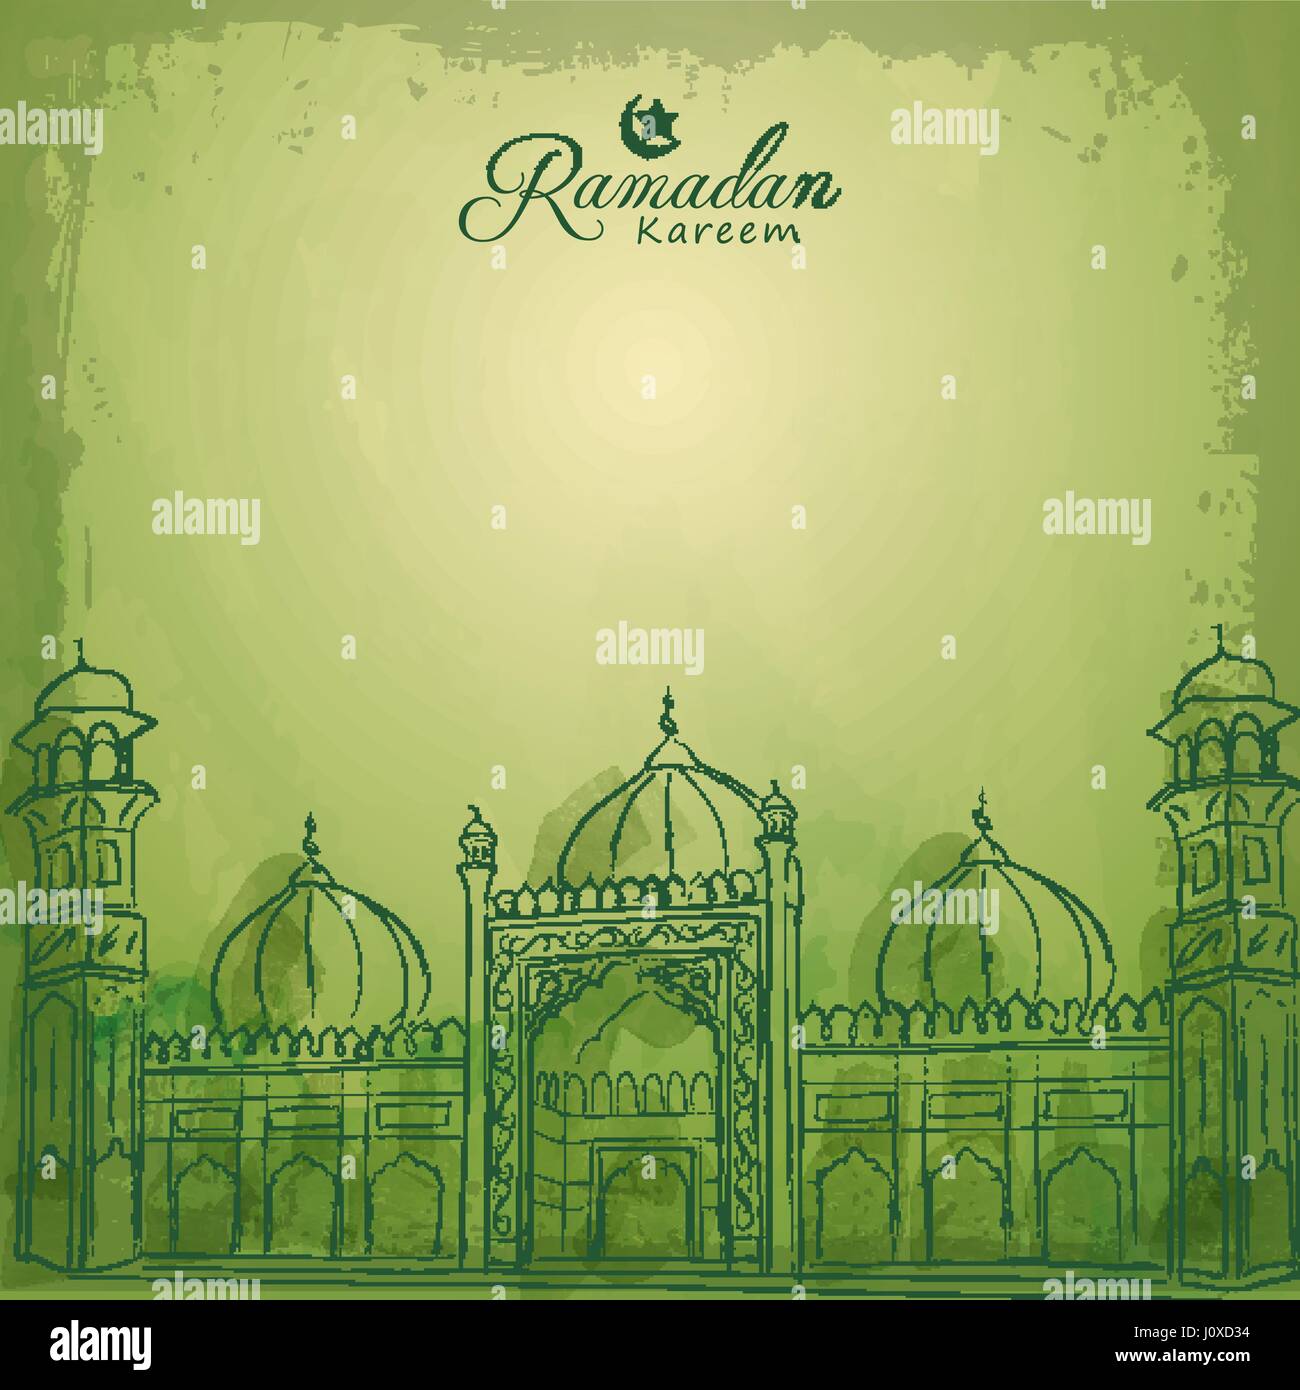 Download 80 Koleksi Background Islami Spanduk Terbaik